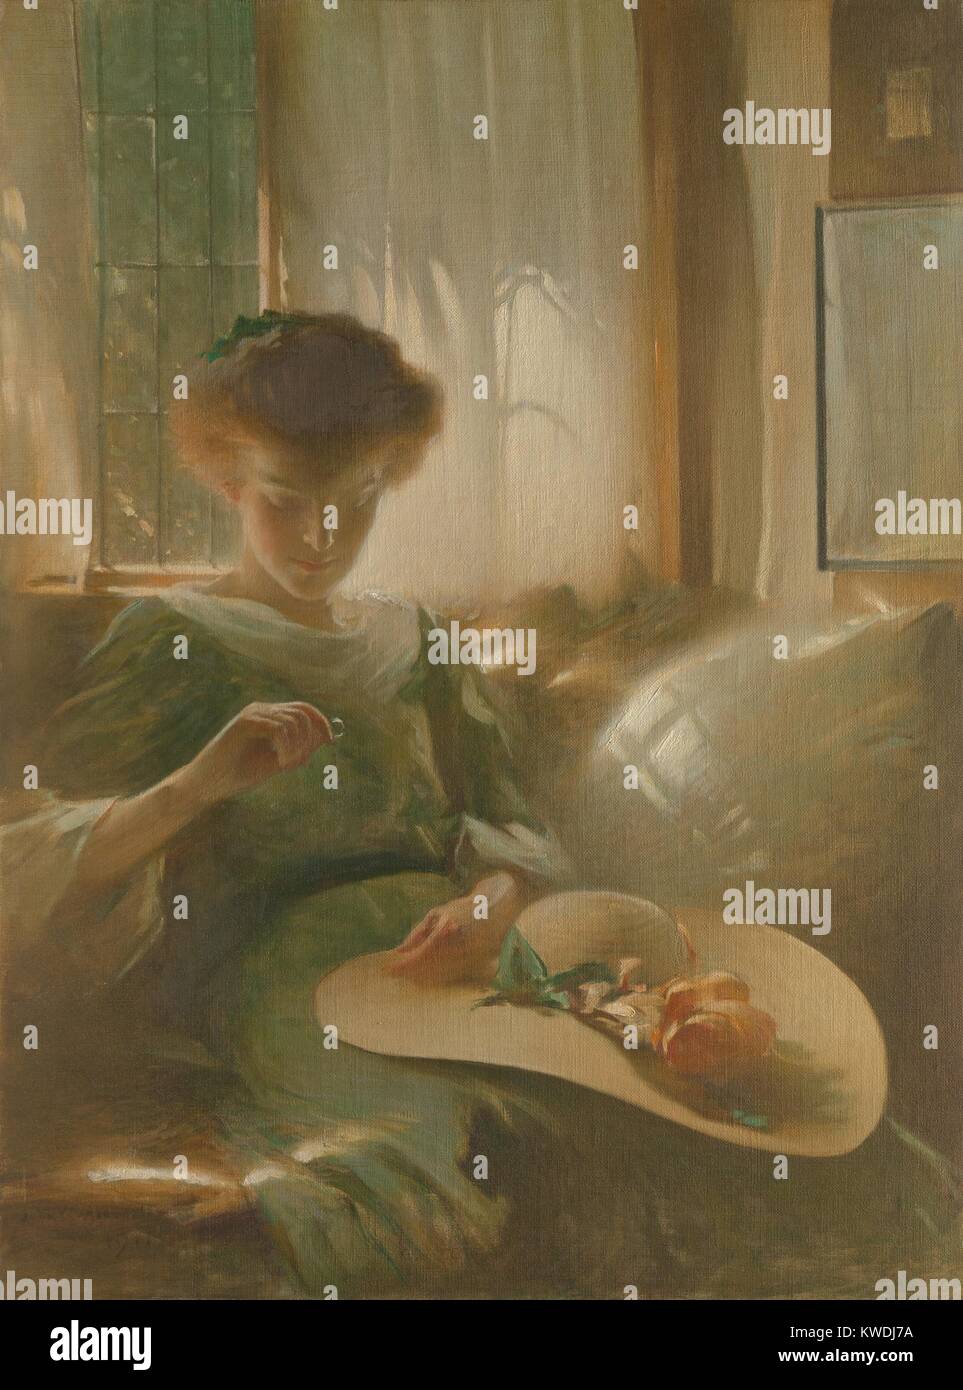 Der RING, von John White Alexander, 1911, Amerikanische Malerei, Öl auf Leinwand. Ein sanft beleuchteten junge Frau hält und Studien einen Ring in einem Innenraum. Mit ihrer Blüte Sonnenhut auf dem Schoß gehalten, hat sie entweder vor kurzem zurückgegeben oder bereitet sich darauf vor, zu gehen (BSLOC 2017 9 40) Stockfoto